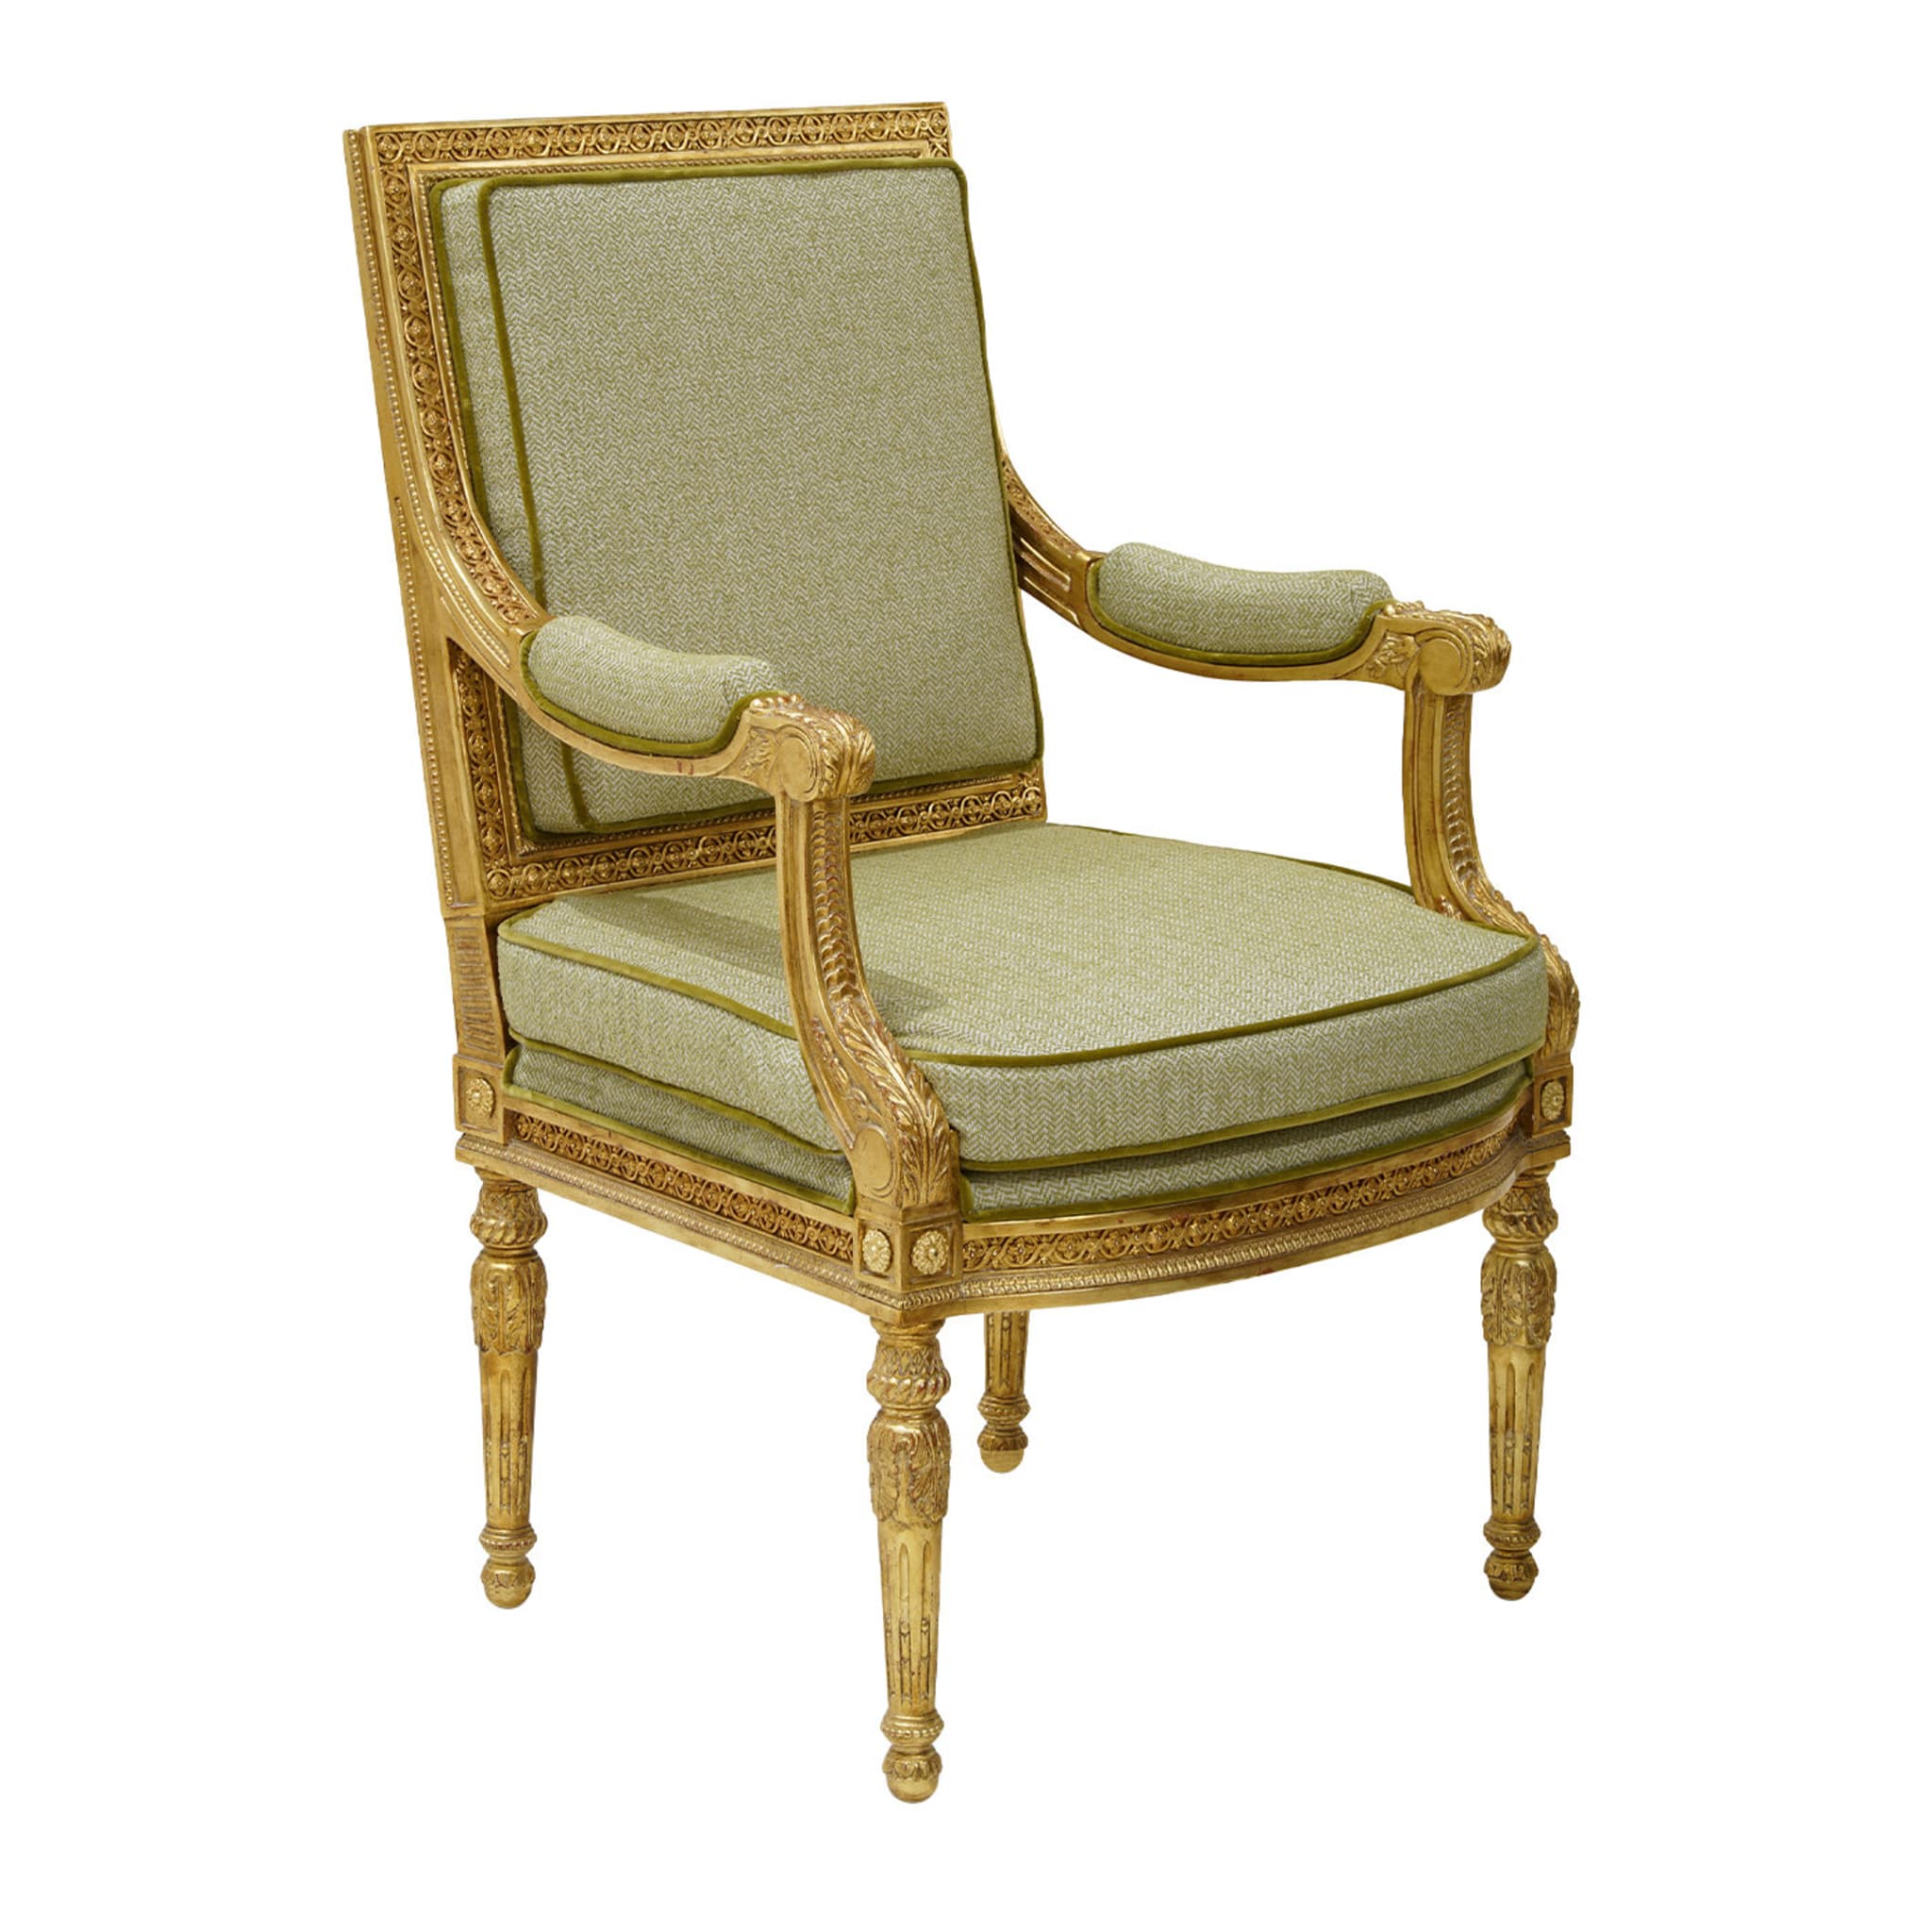 Chaise de style Louis XVI #1 - Vue principale